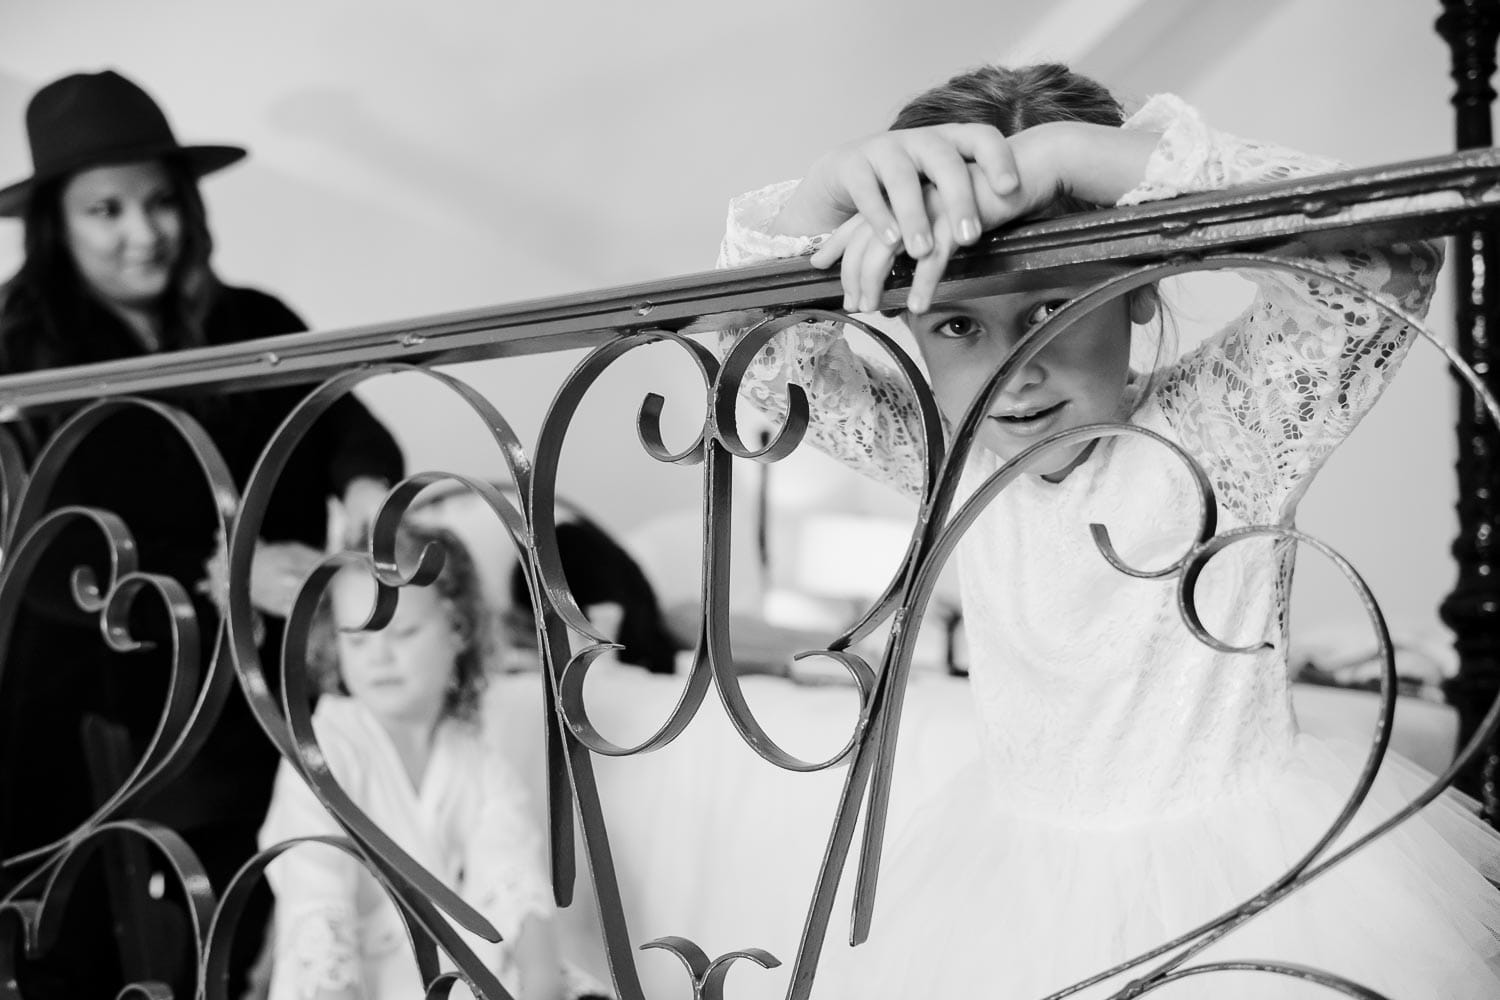 Flower girl peers through metal railing in a hotel room